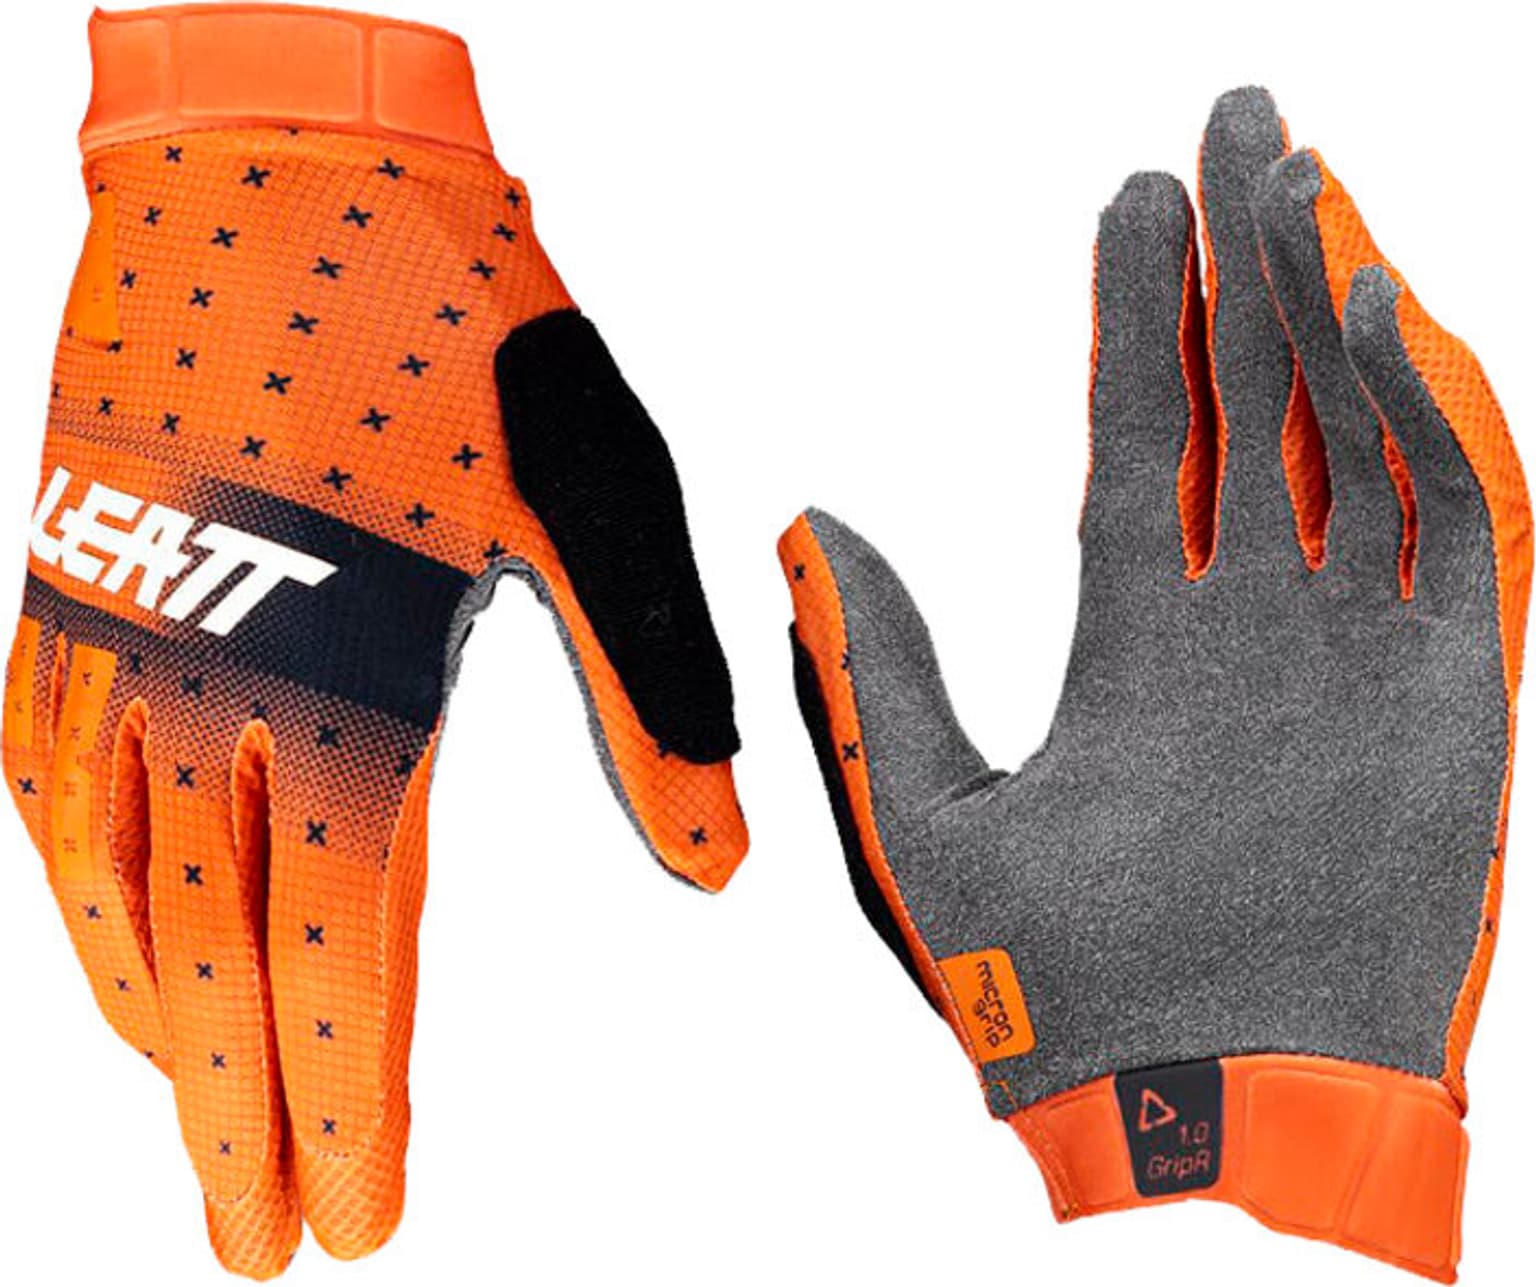 Leatt Leatt MTB Glove 1.0 GripR Gants de vélo orange 2